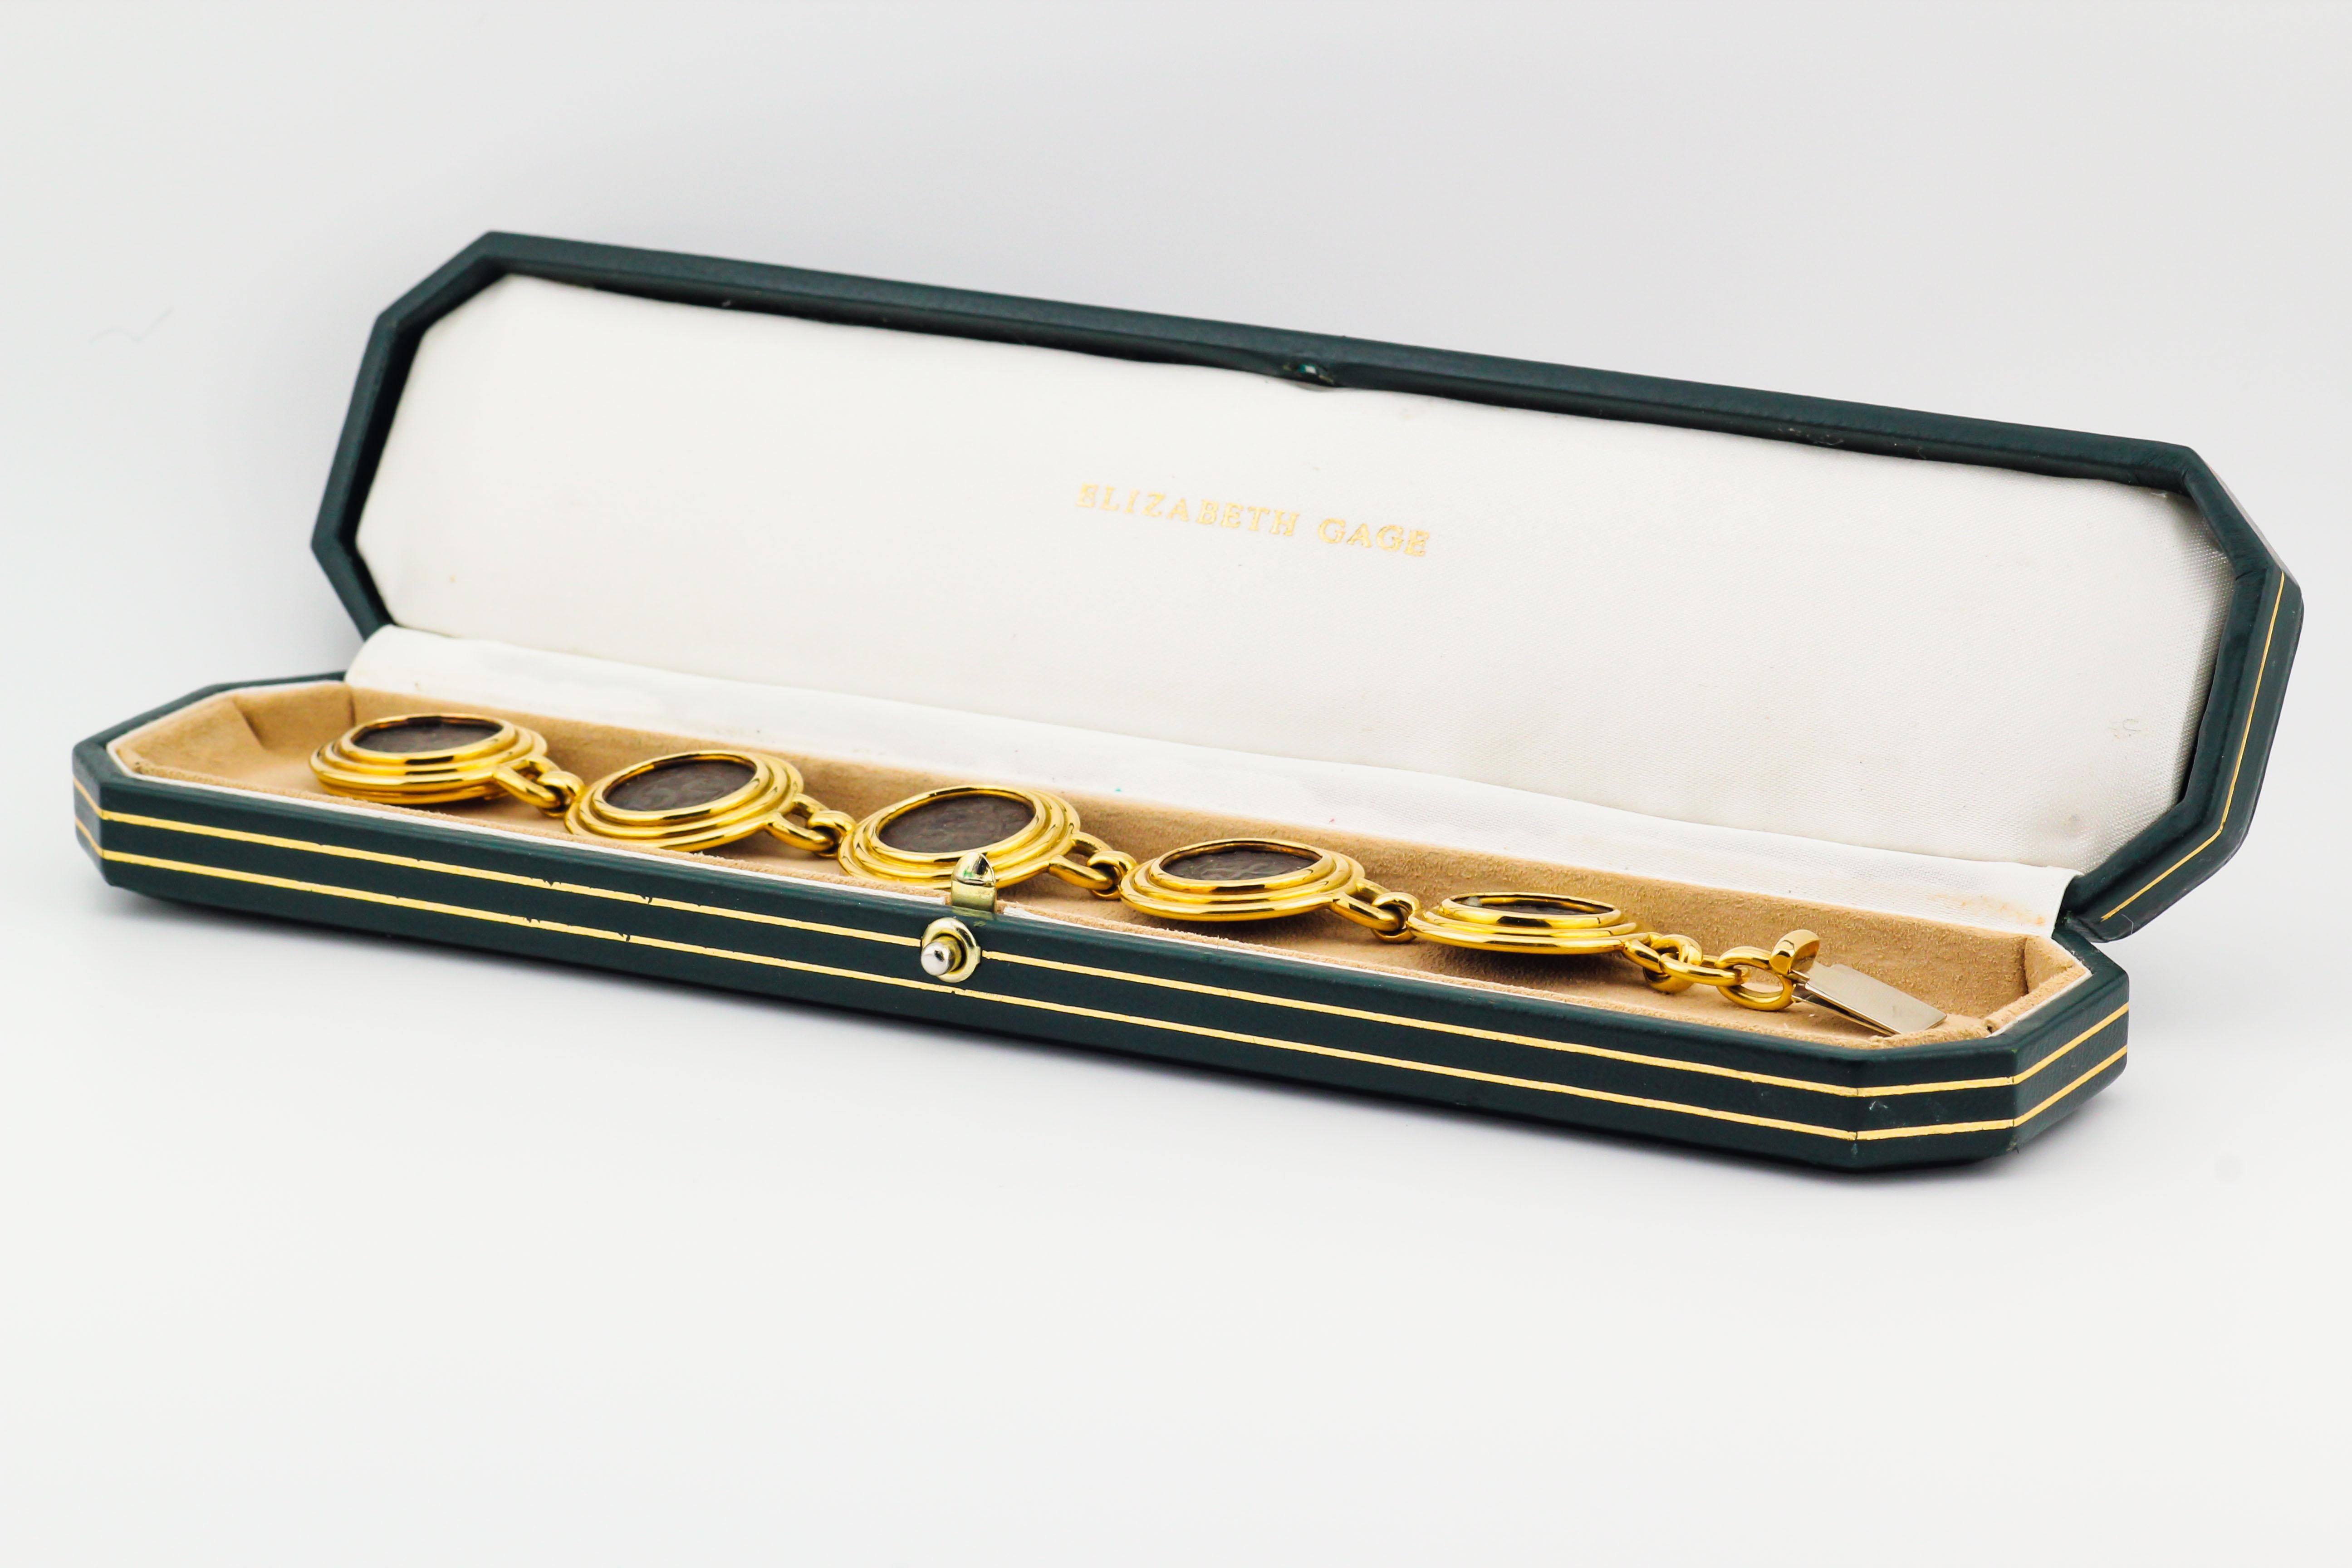 Pour votre considération, le bracelet en or jaune 18k avec pièce médiévale suivant est un bijou unique et luxueux conçu par la célèbre créatrice de bijoux Elizabeth Gage. Il présente une combinaison d'éléments historiques et d'artisanat exquis.

Le